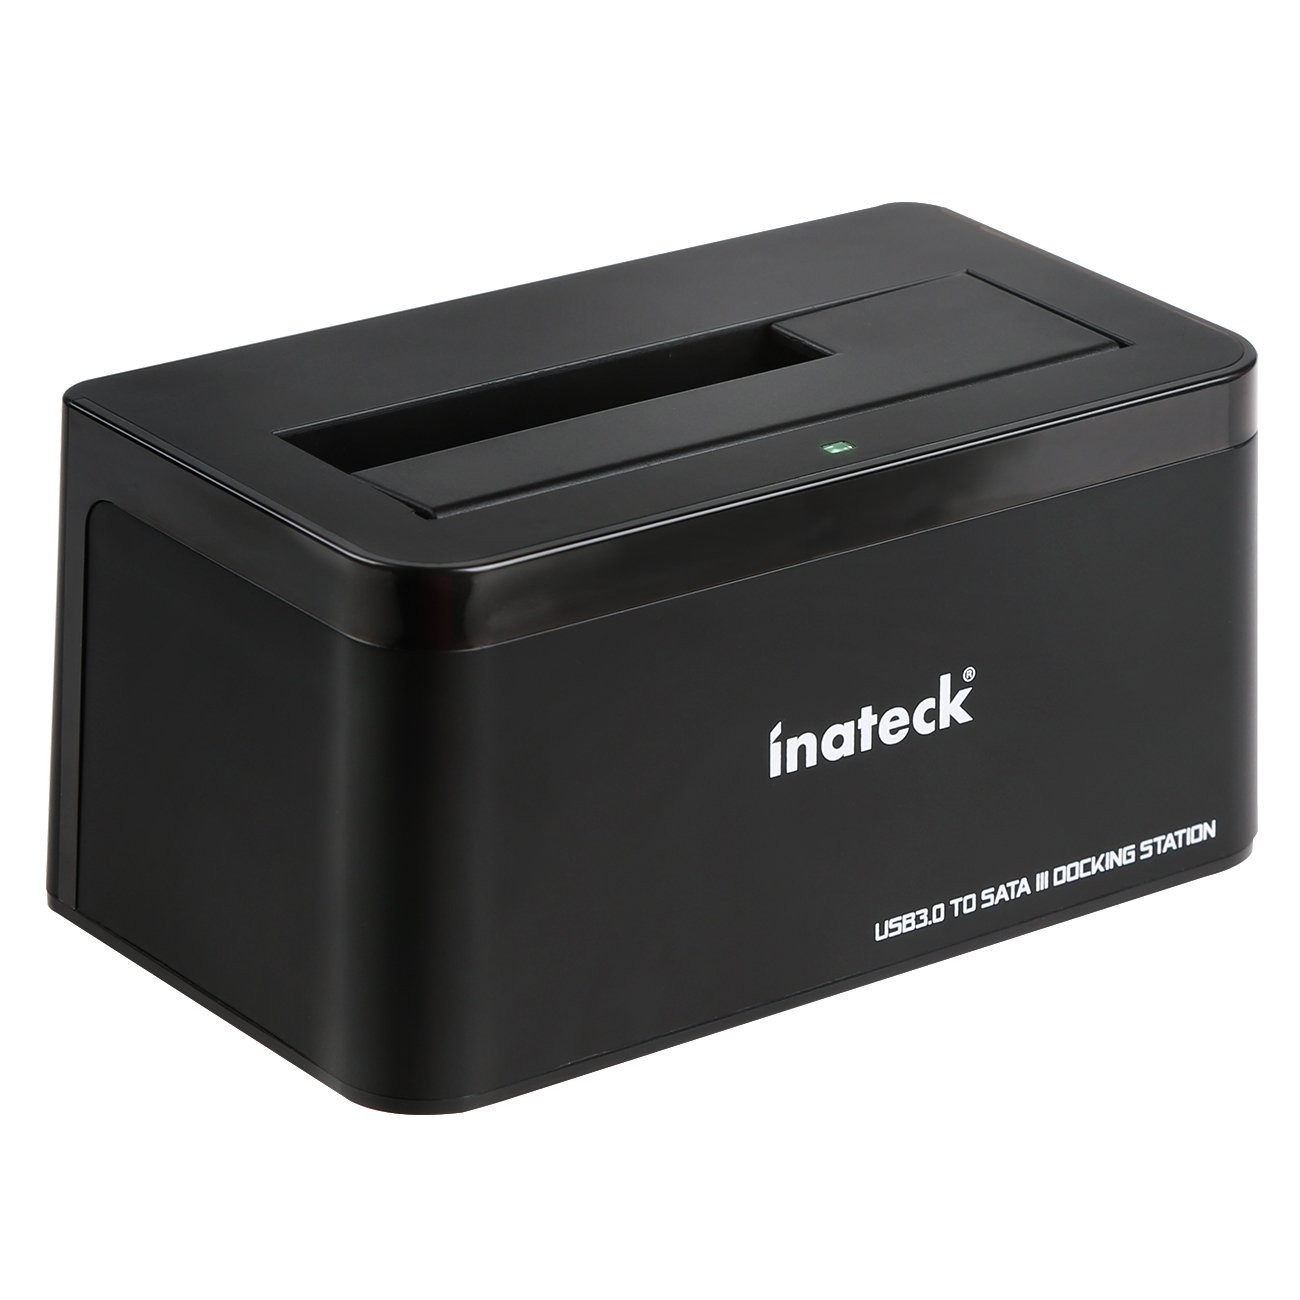 Inateck FD1005 USB 3.0 Festplatten Dockingstation für 2,5 / 3,5 Zoll HDDs für nur 19,99 Euro inkl. Prime-Versand